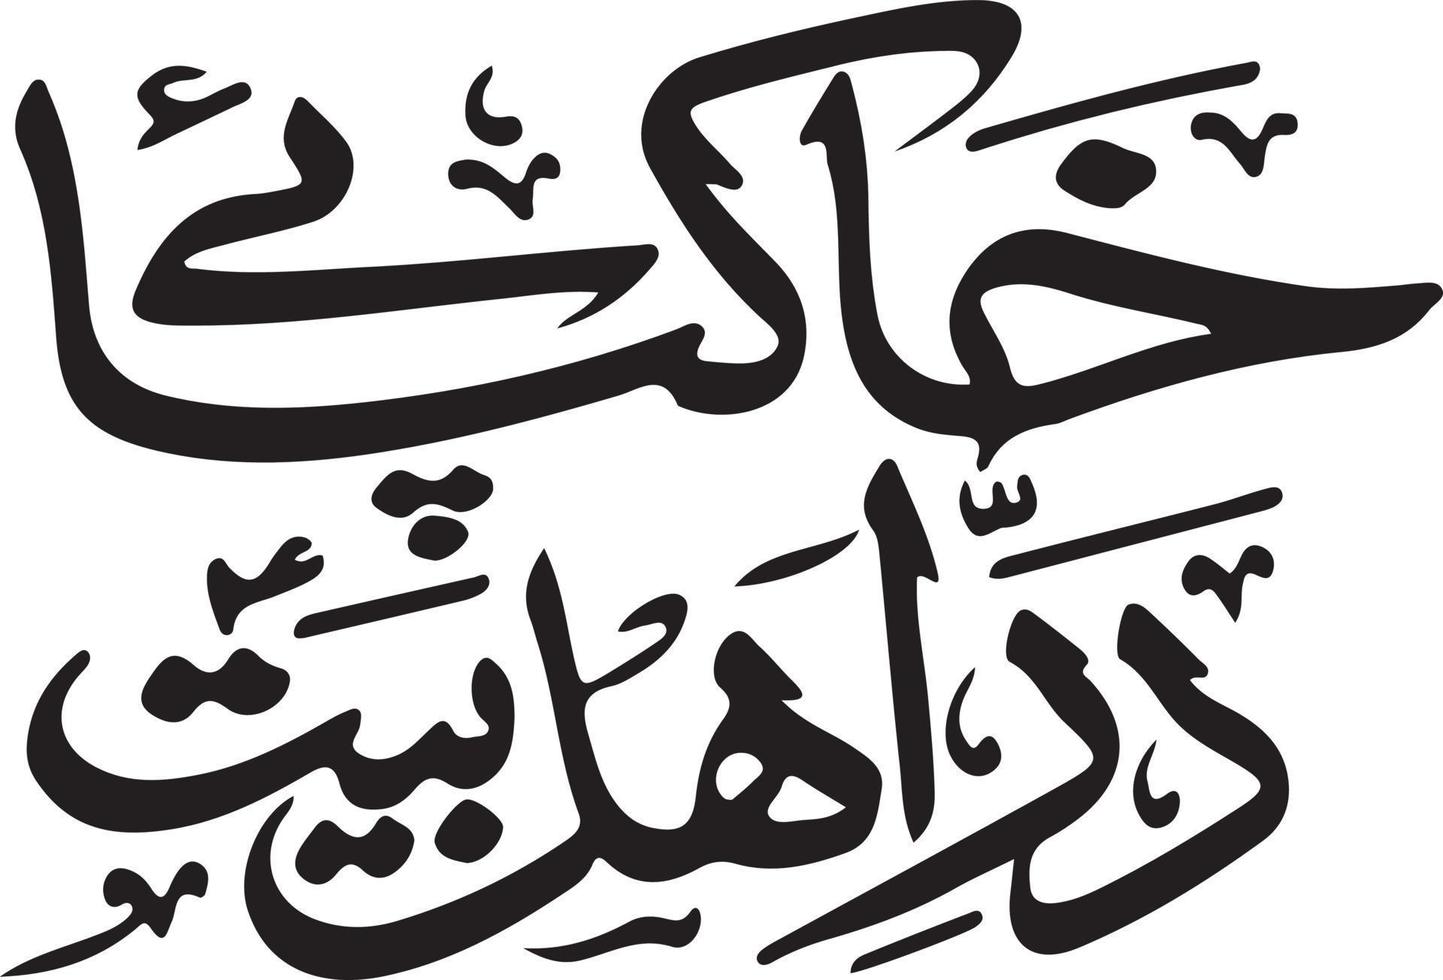 khak paey dar ahlbeat islamic arabicum kalligrafi fri vektor